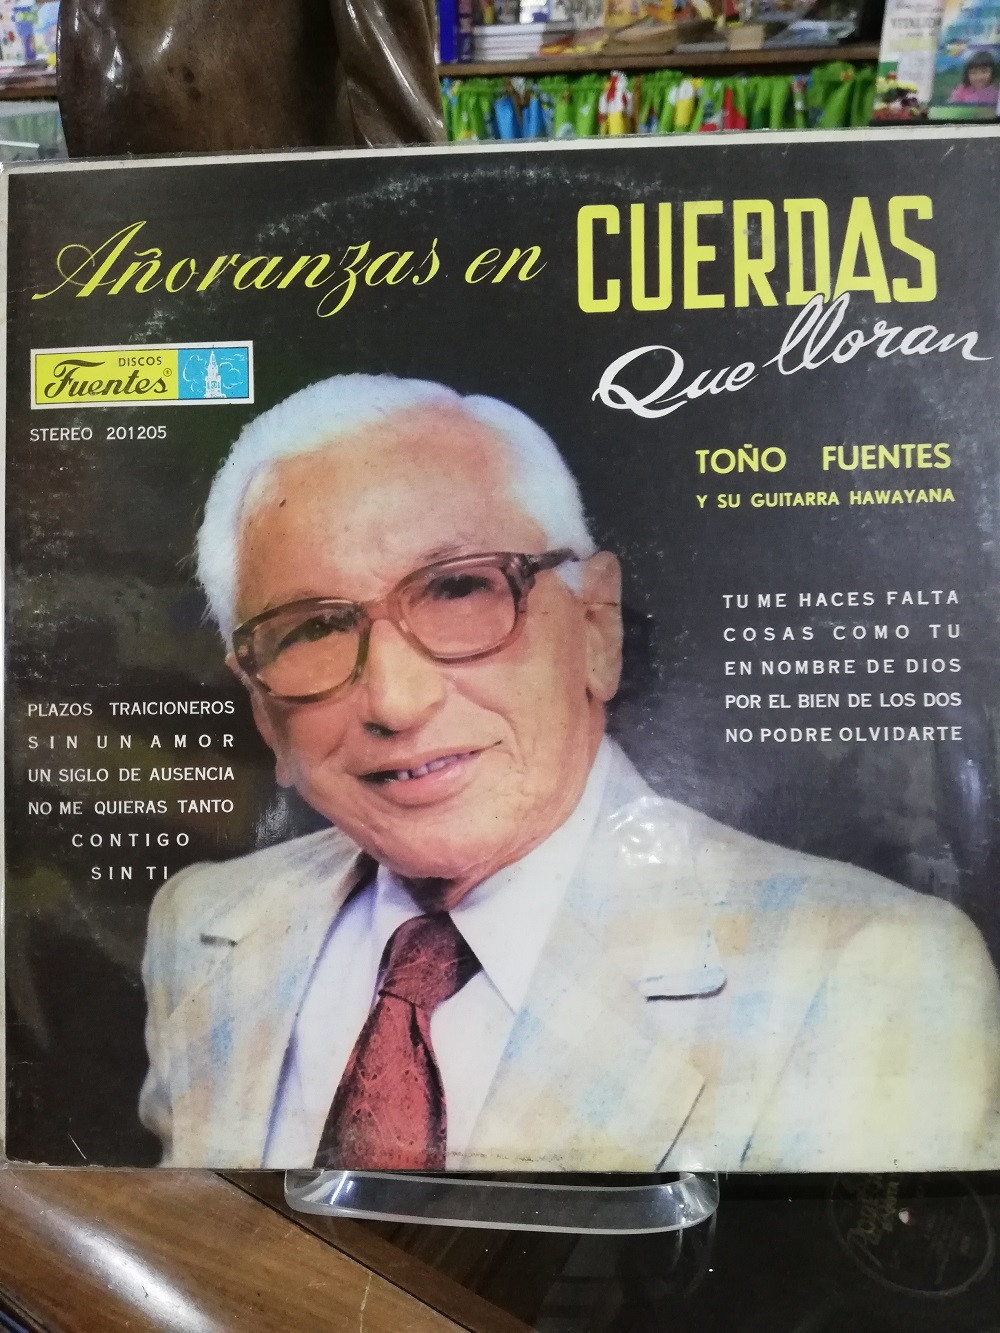 Imagen CD TOÑO FUENTES Y SU GUITARRA HAWIANA - AÑORANZAS EN CUERDAS